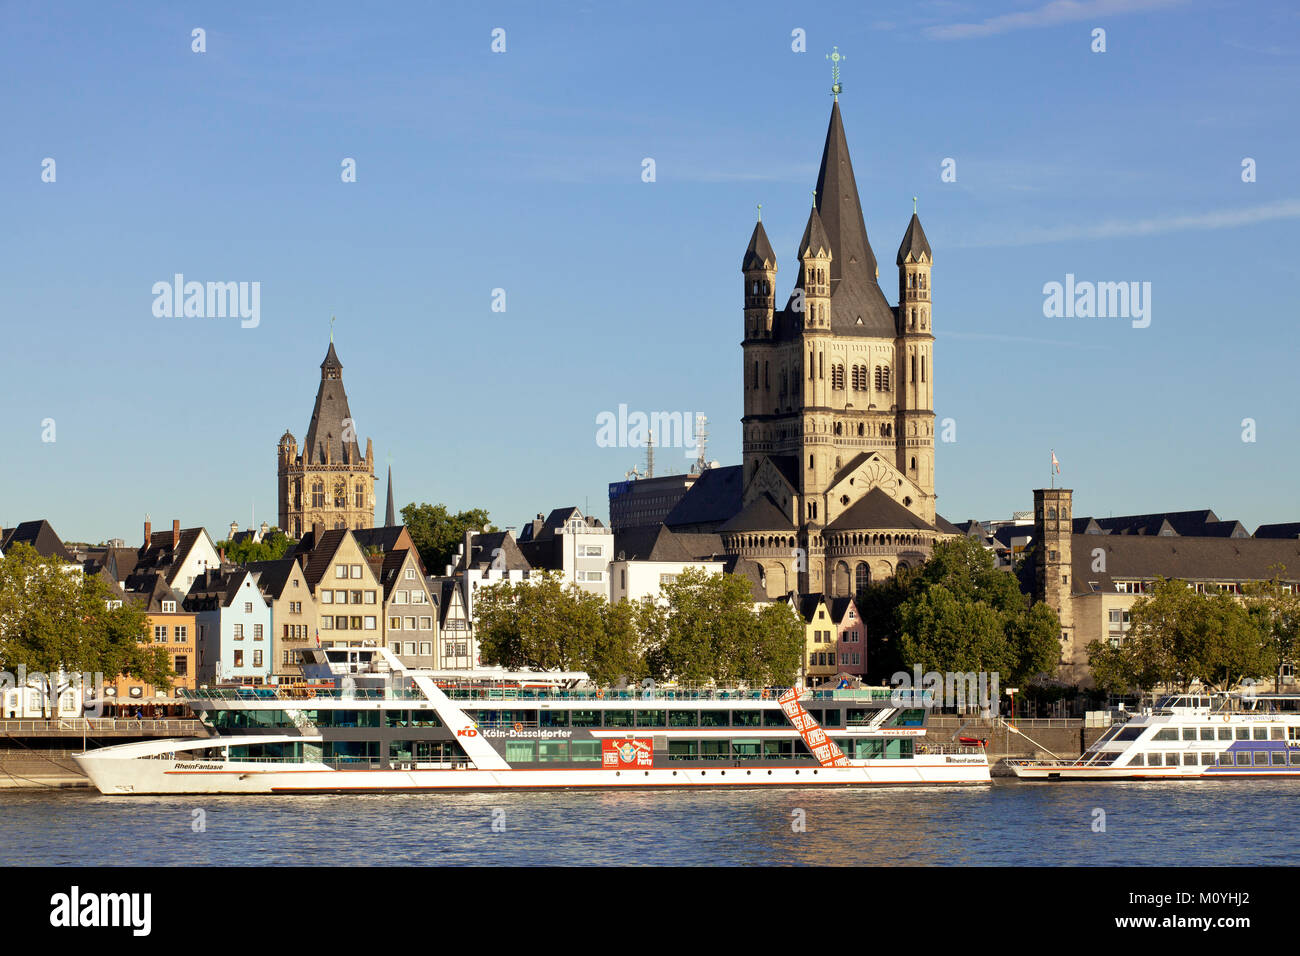 Germania, Colonia, vista sul fiume Reno per il campanile del municipio storico e la chiesa romanica lordi di San Martin. Deutschland, Koeln Foto Stock